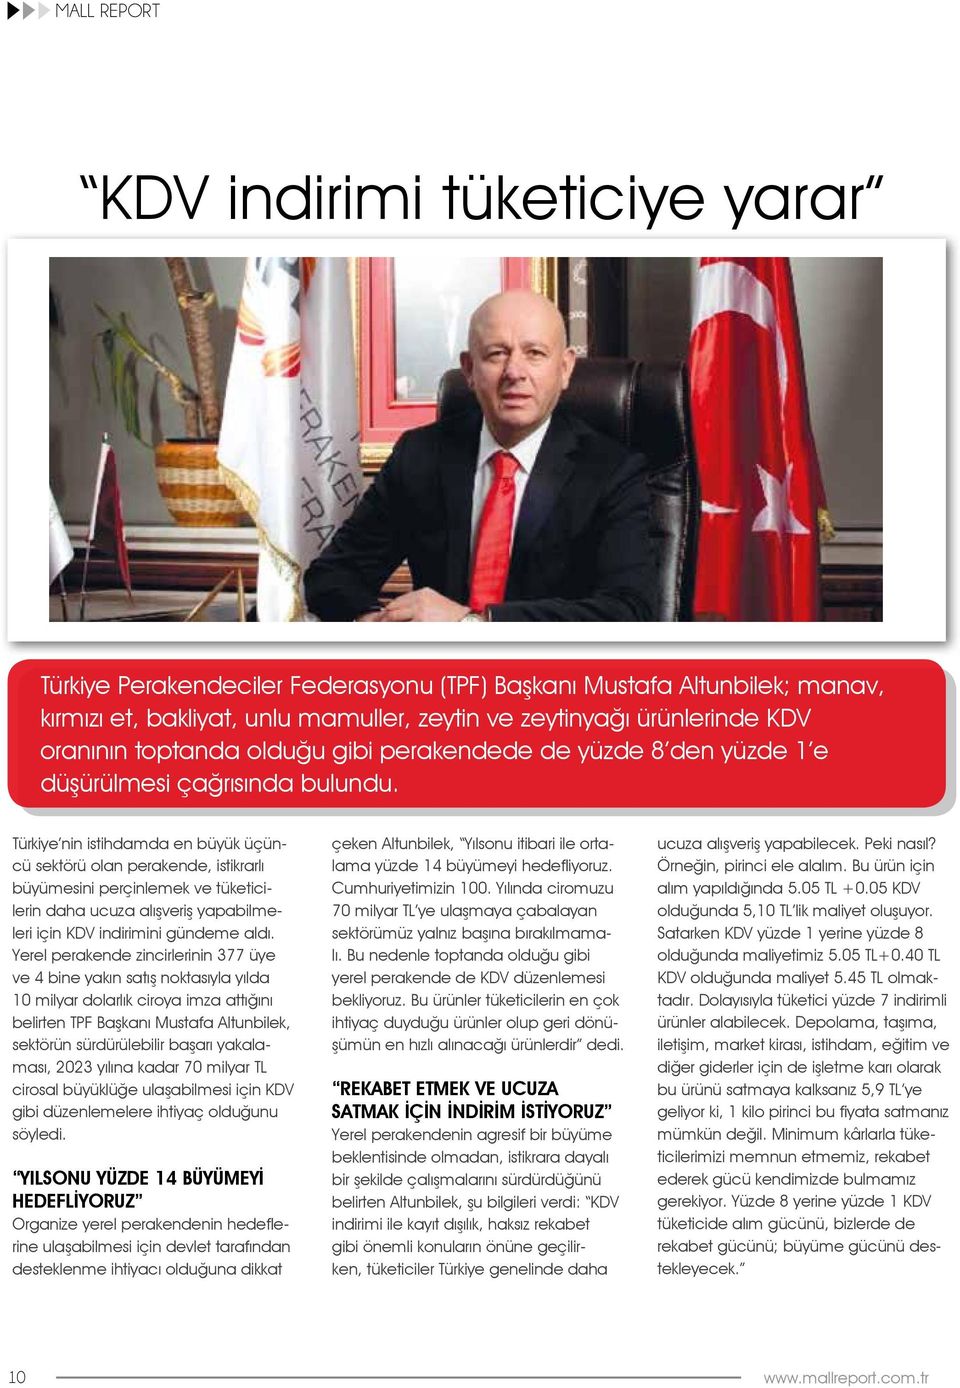 Türkiye nin istihdamda en büyük üçüncü sektörü olan perakende, istikrarlı büyümesini perçinlemek ve tüketicilerin daha ucuza alışveriş yapabilmeleri için KDV indirimini gündeme aldı.